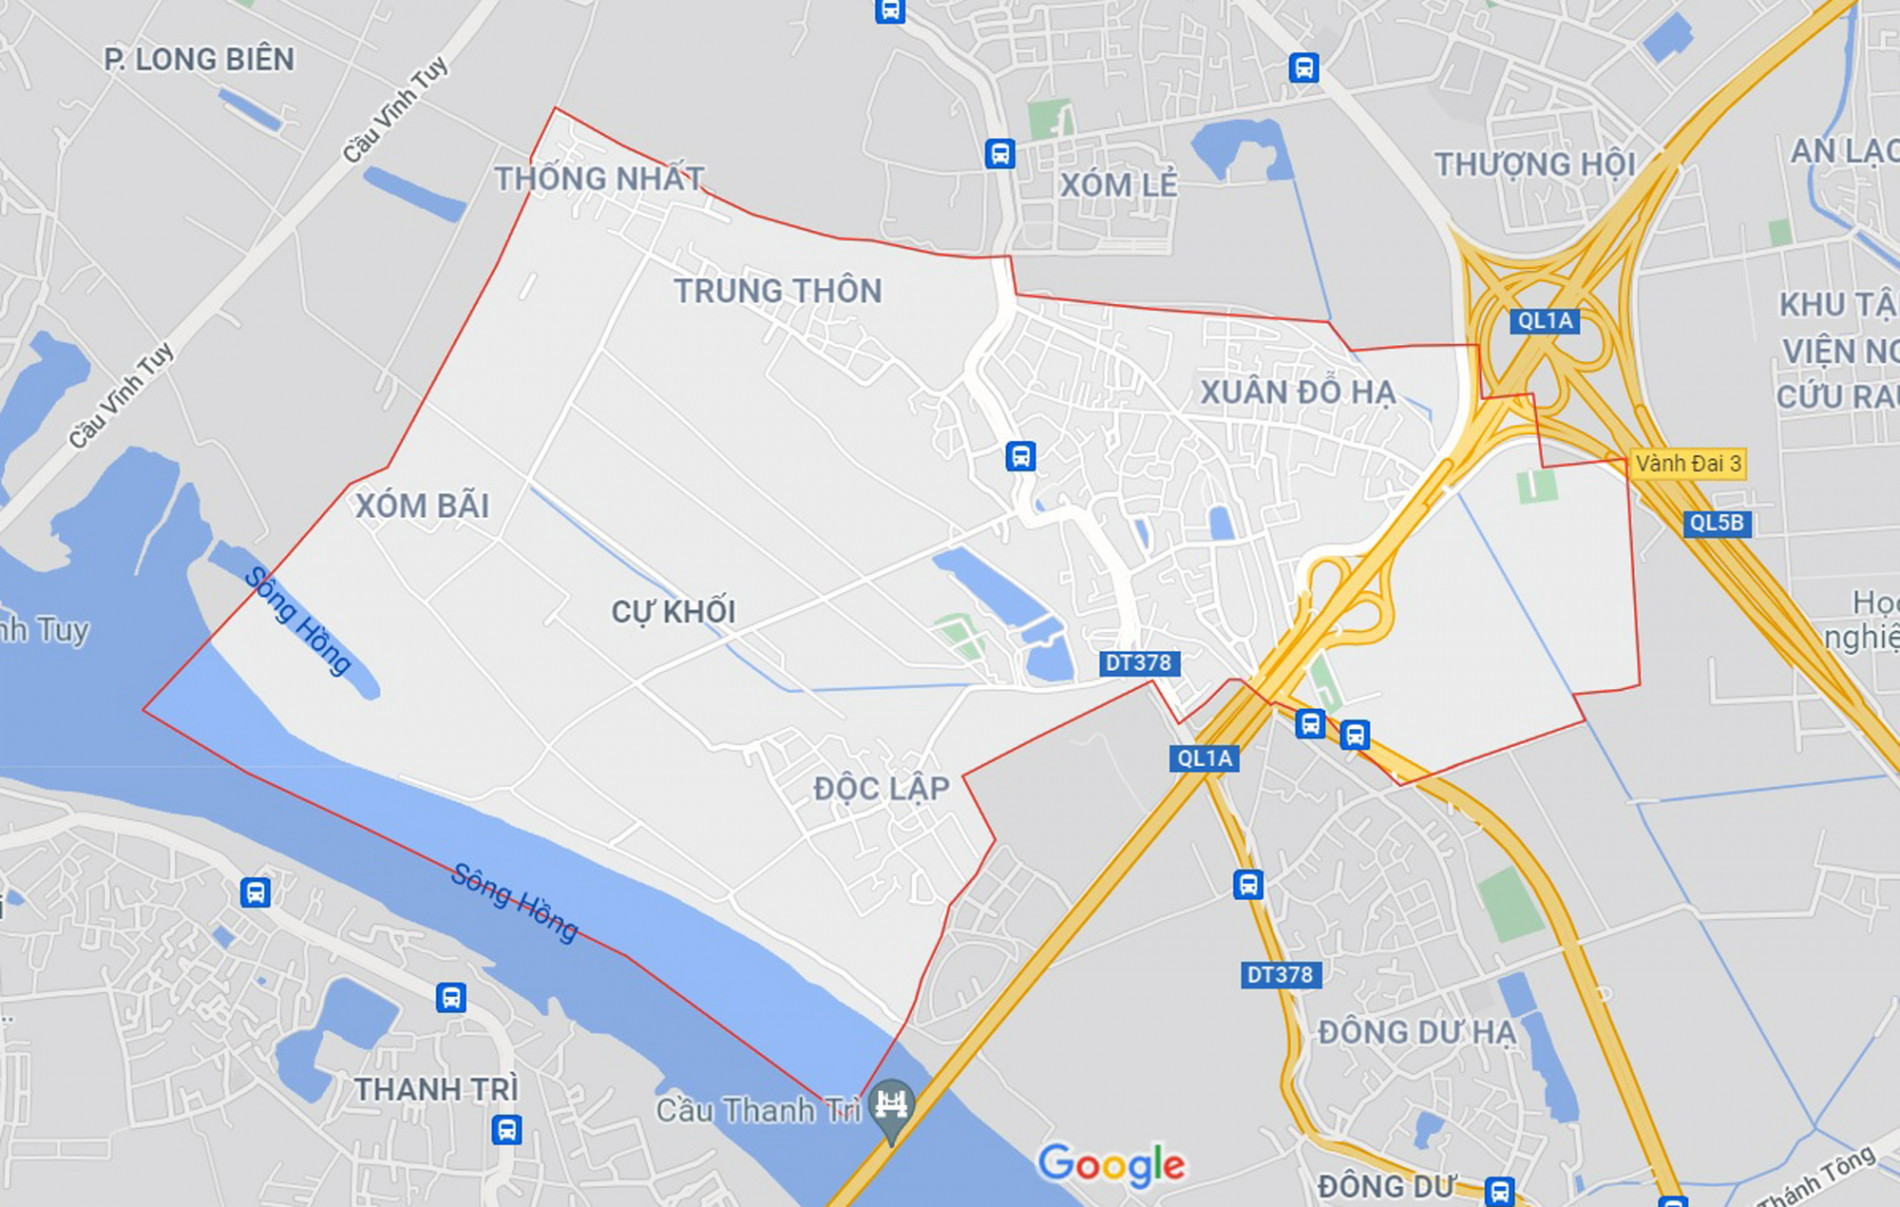 Những khu đất sắp thu hồi để mở đường ở phường Cự Khối, Long Biên, Hà Nội (phần 1) - Ảnh 1.